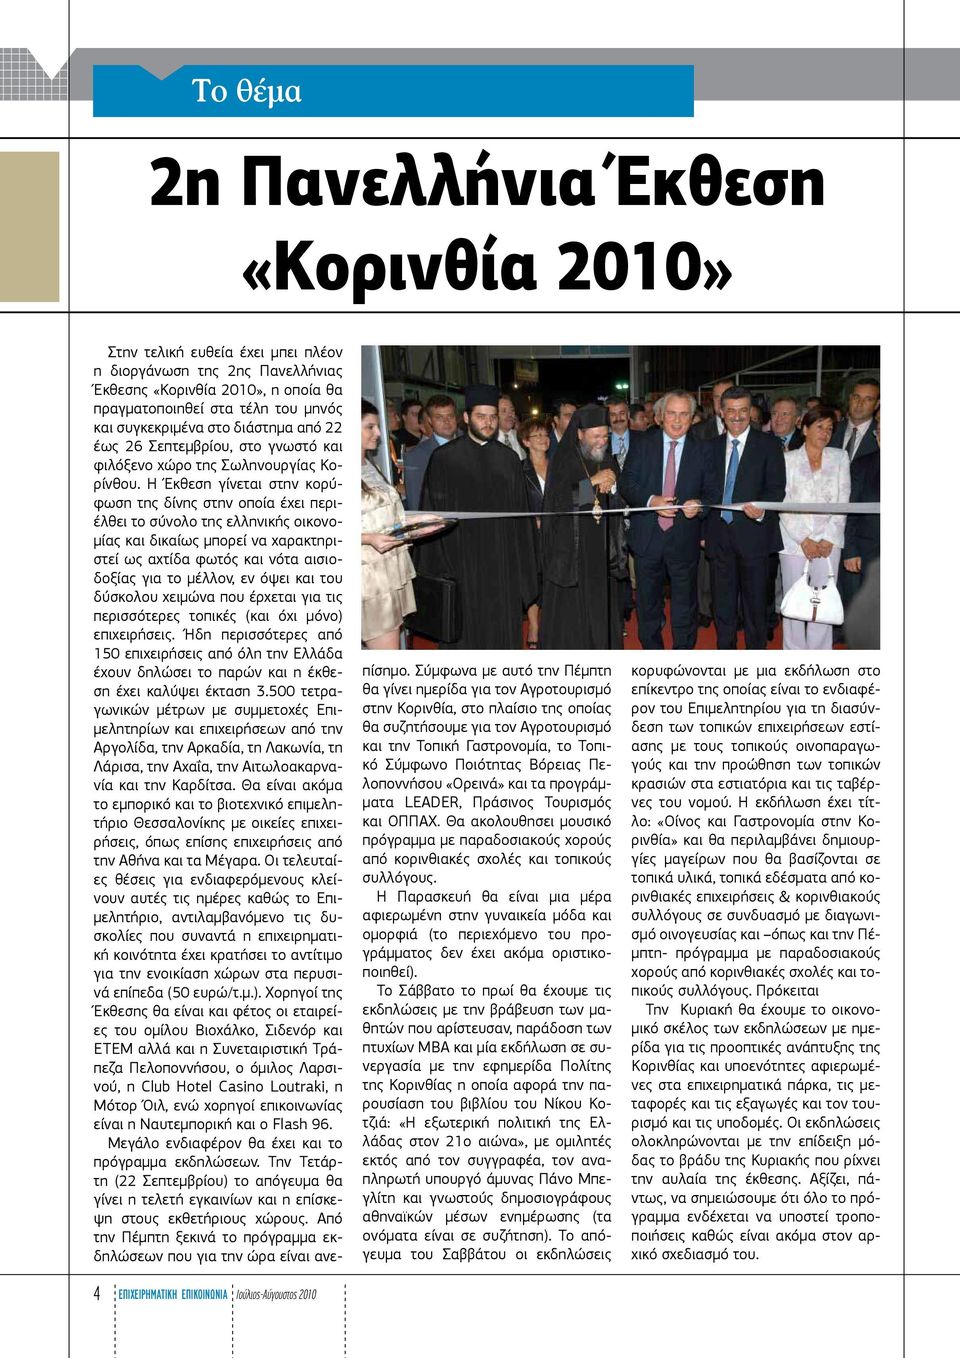 Η Έκθεση γίνεται στην κορύφωση της δίνης στην οποία έχει περιέλθει το σύνολο της ελληνικής οικονομίας και δικαίως μπορεί να χαρακτηριστεί ως αχτίδα φωτός και νότα αισιοδοξίας για το μέλλον, εν όψει